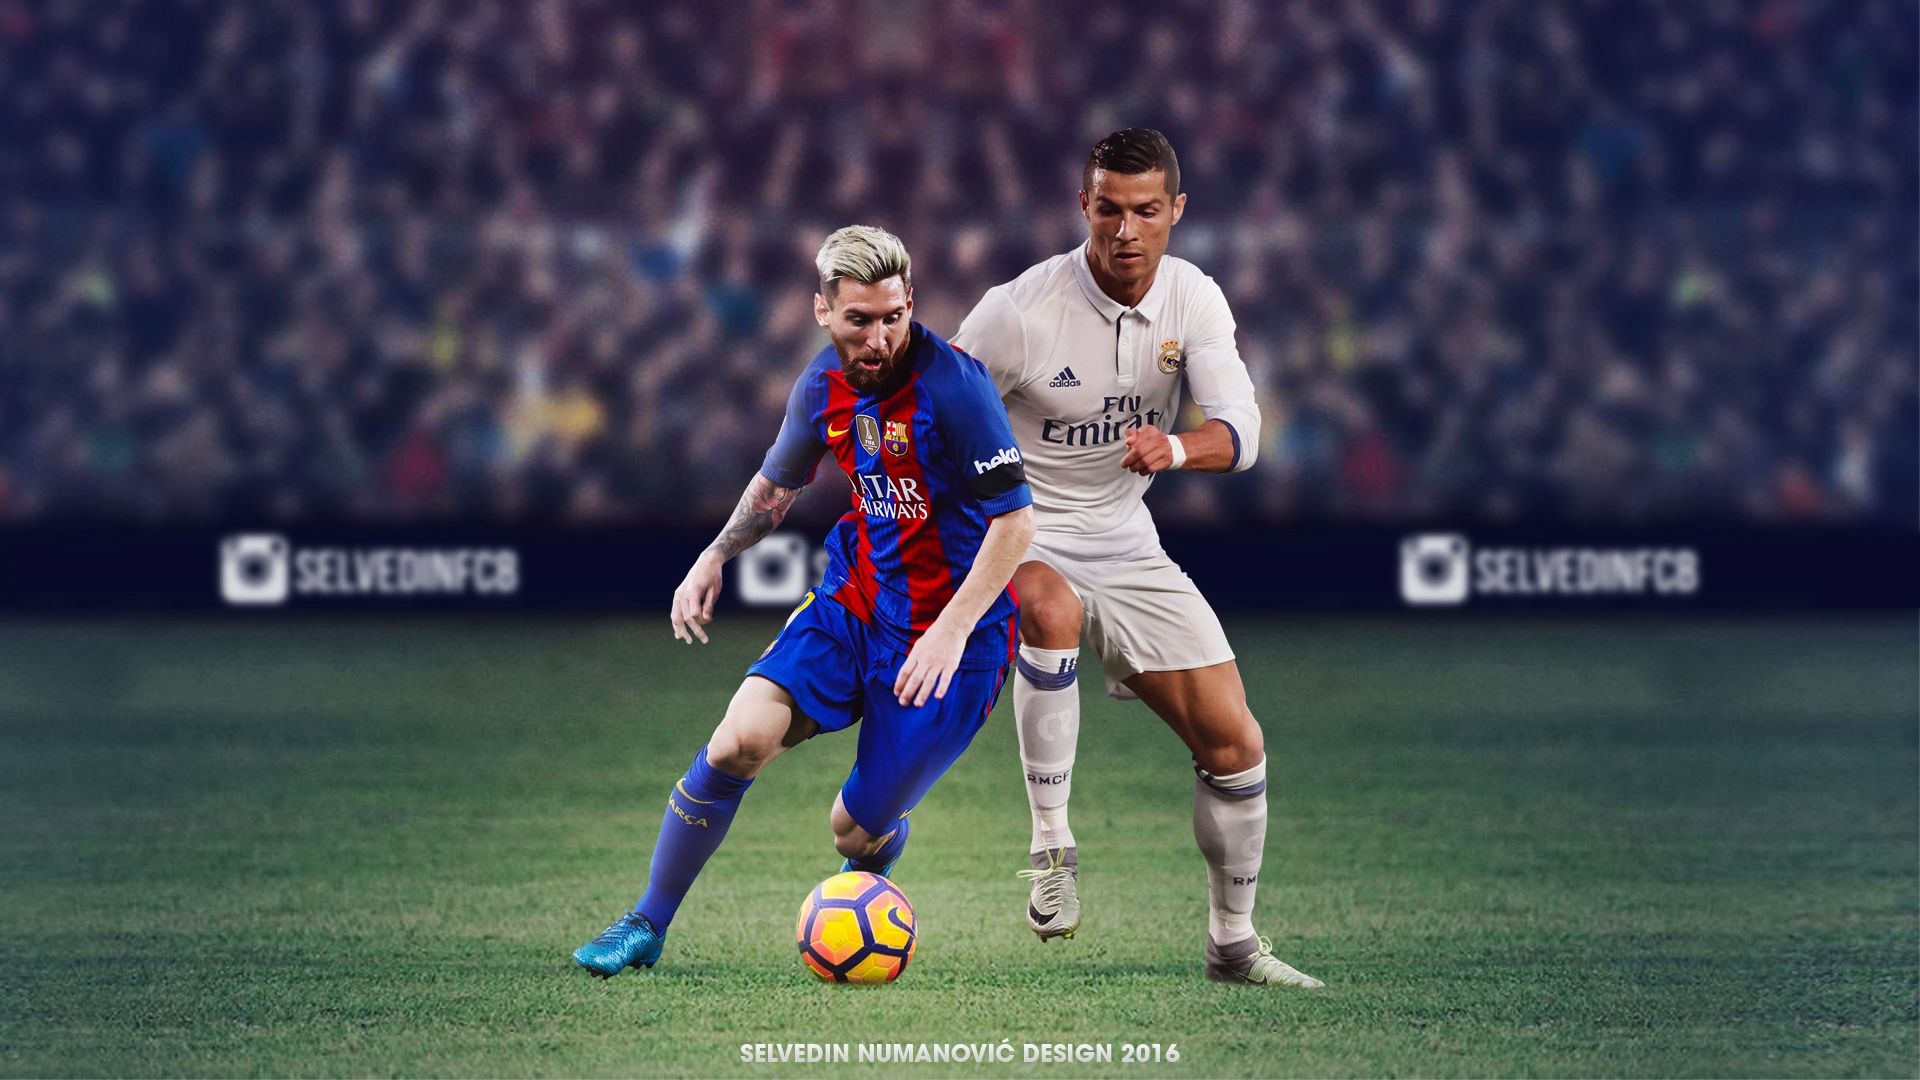 Hình nền Messi sẽ giúp bạn thấy được tài năng và sự xuất sắc của anh ấy trên sân cỏ. Hãy sử dụng hình nền này để tạo cho mình một không gian làm việc thật độc đáo.